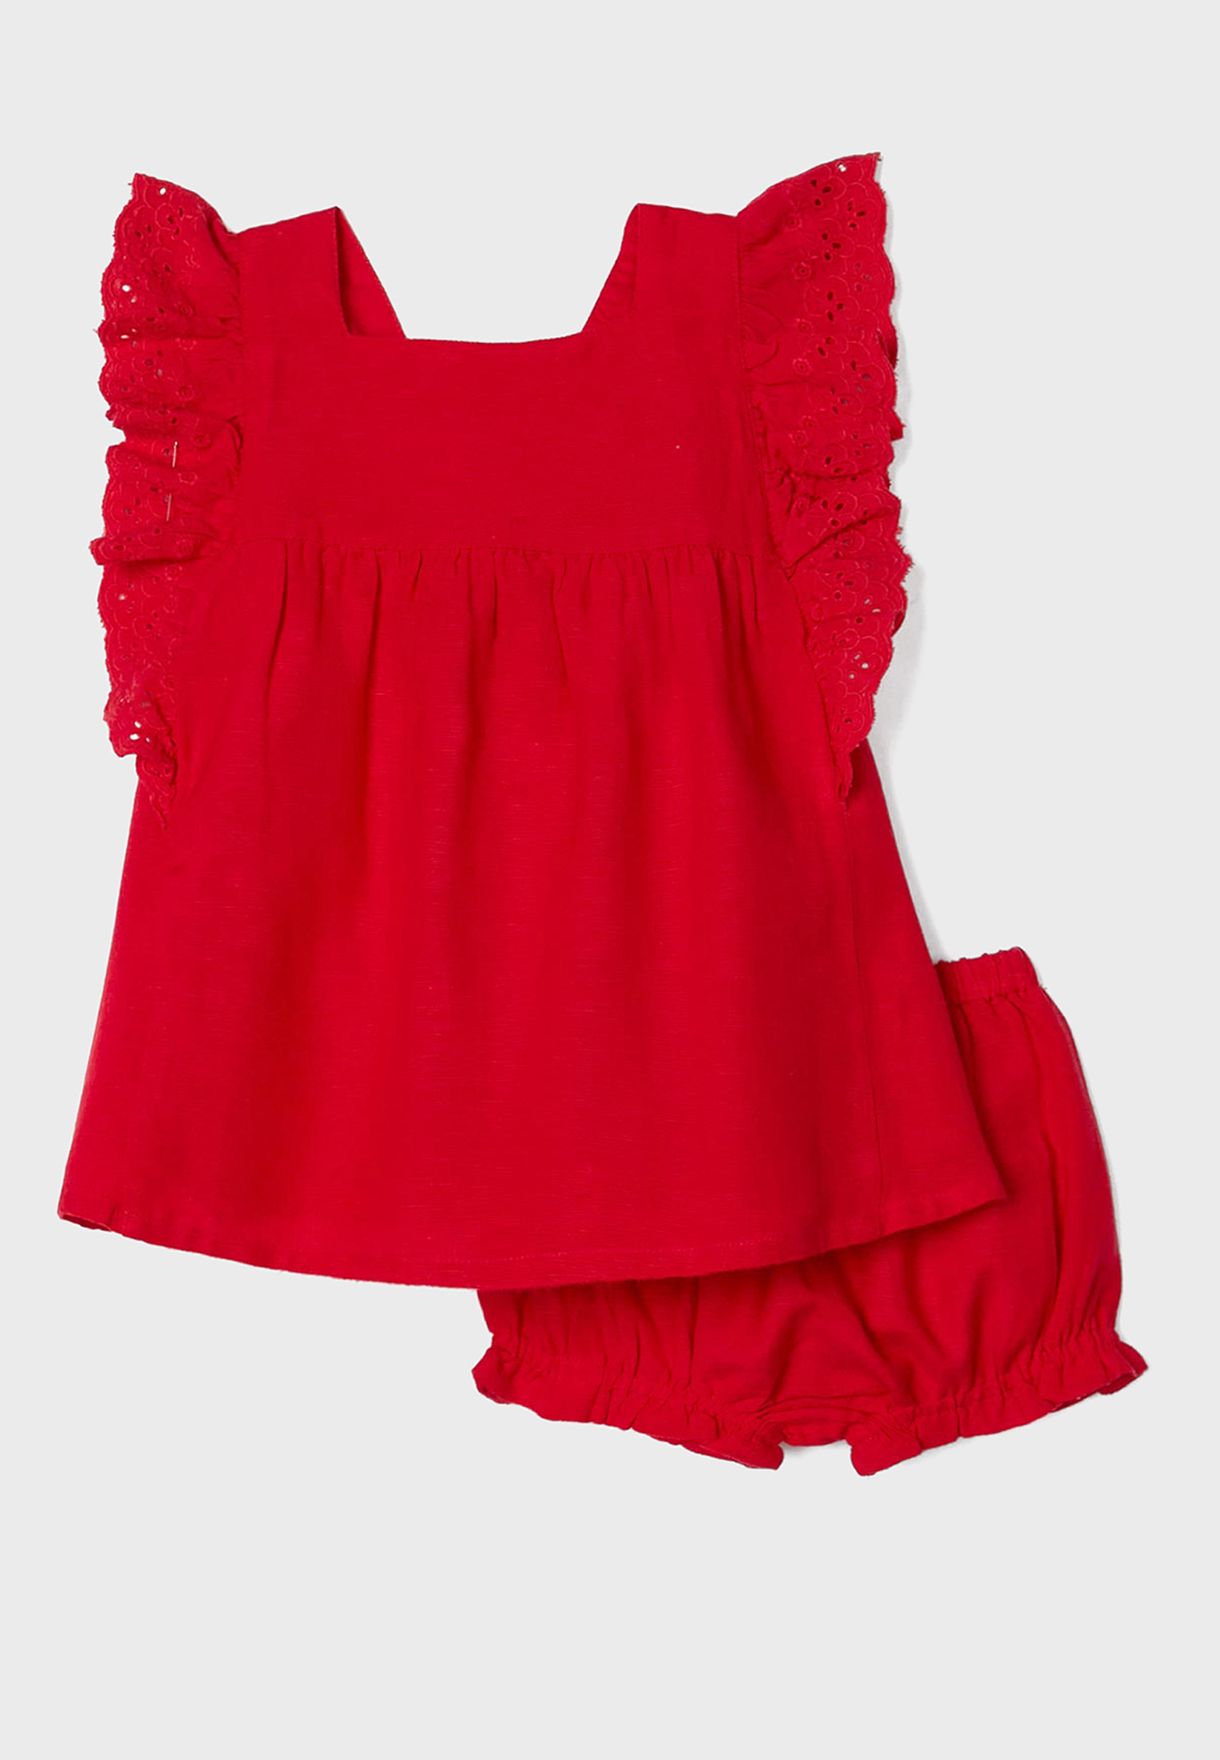 Infant Lace Ruffle Dress & Knickers Set